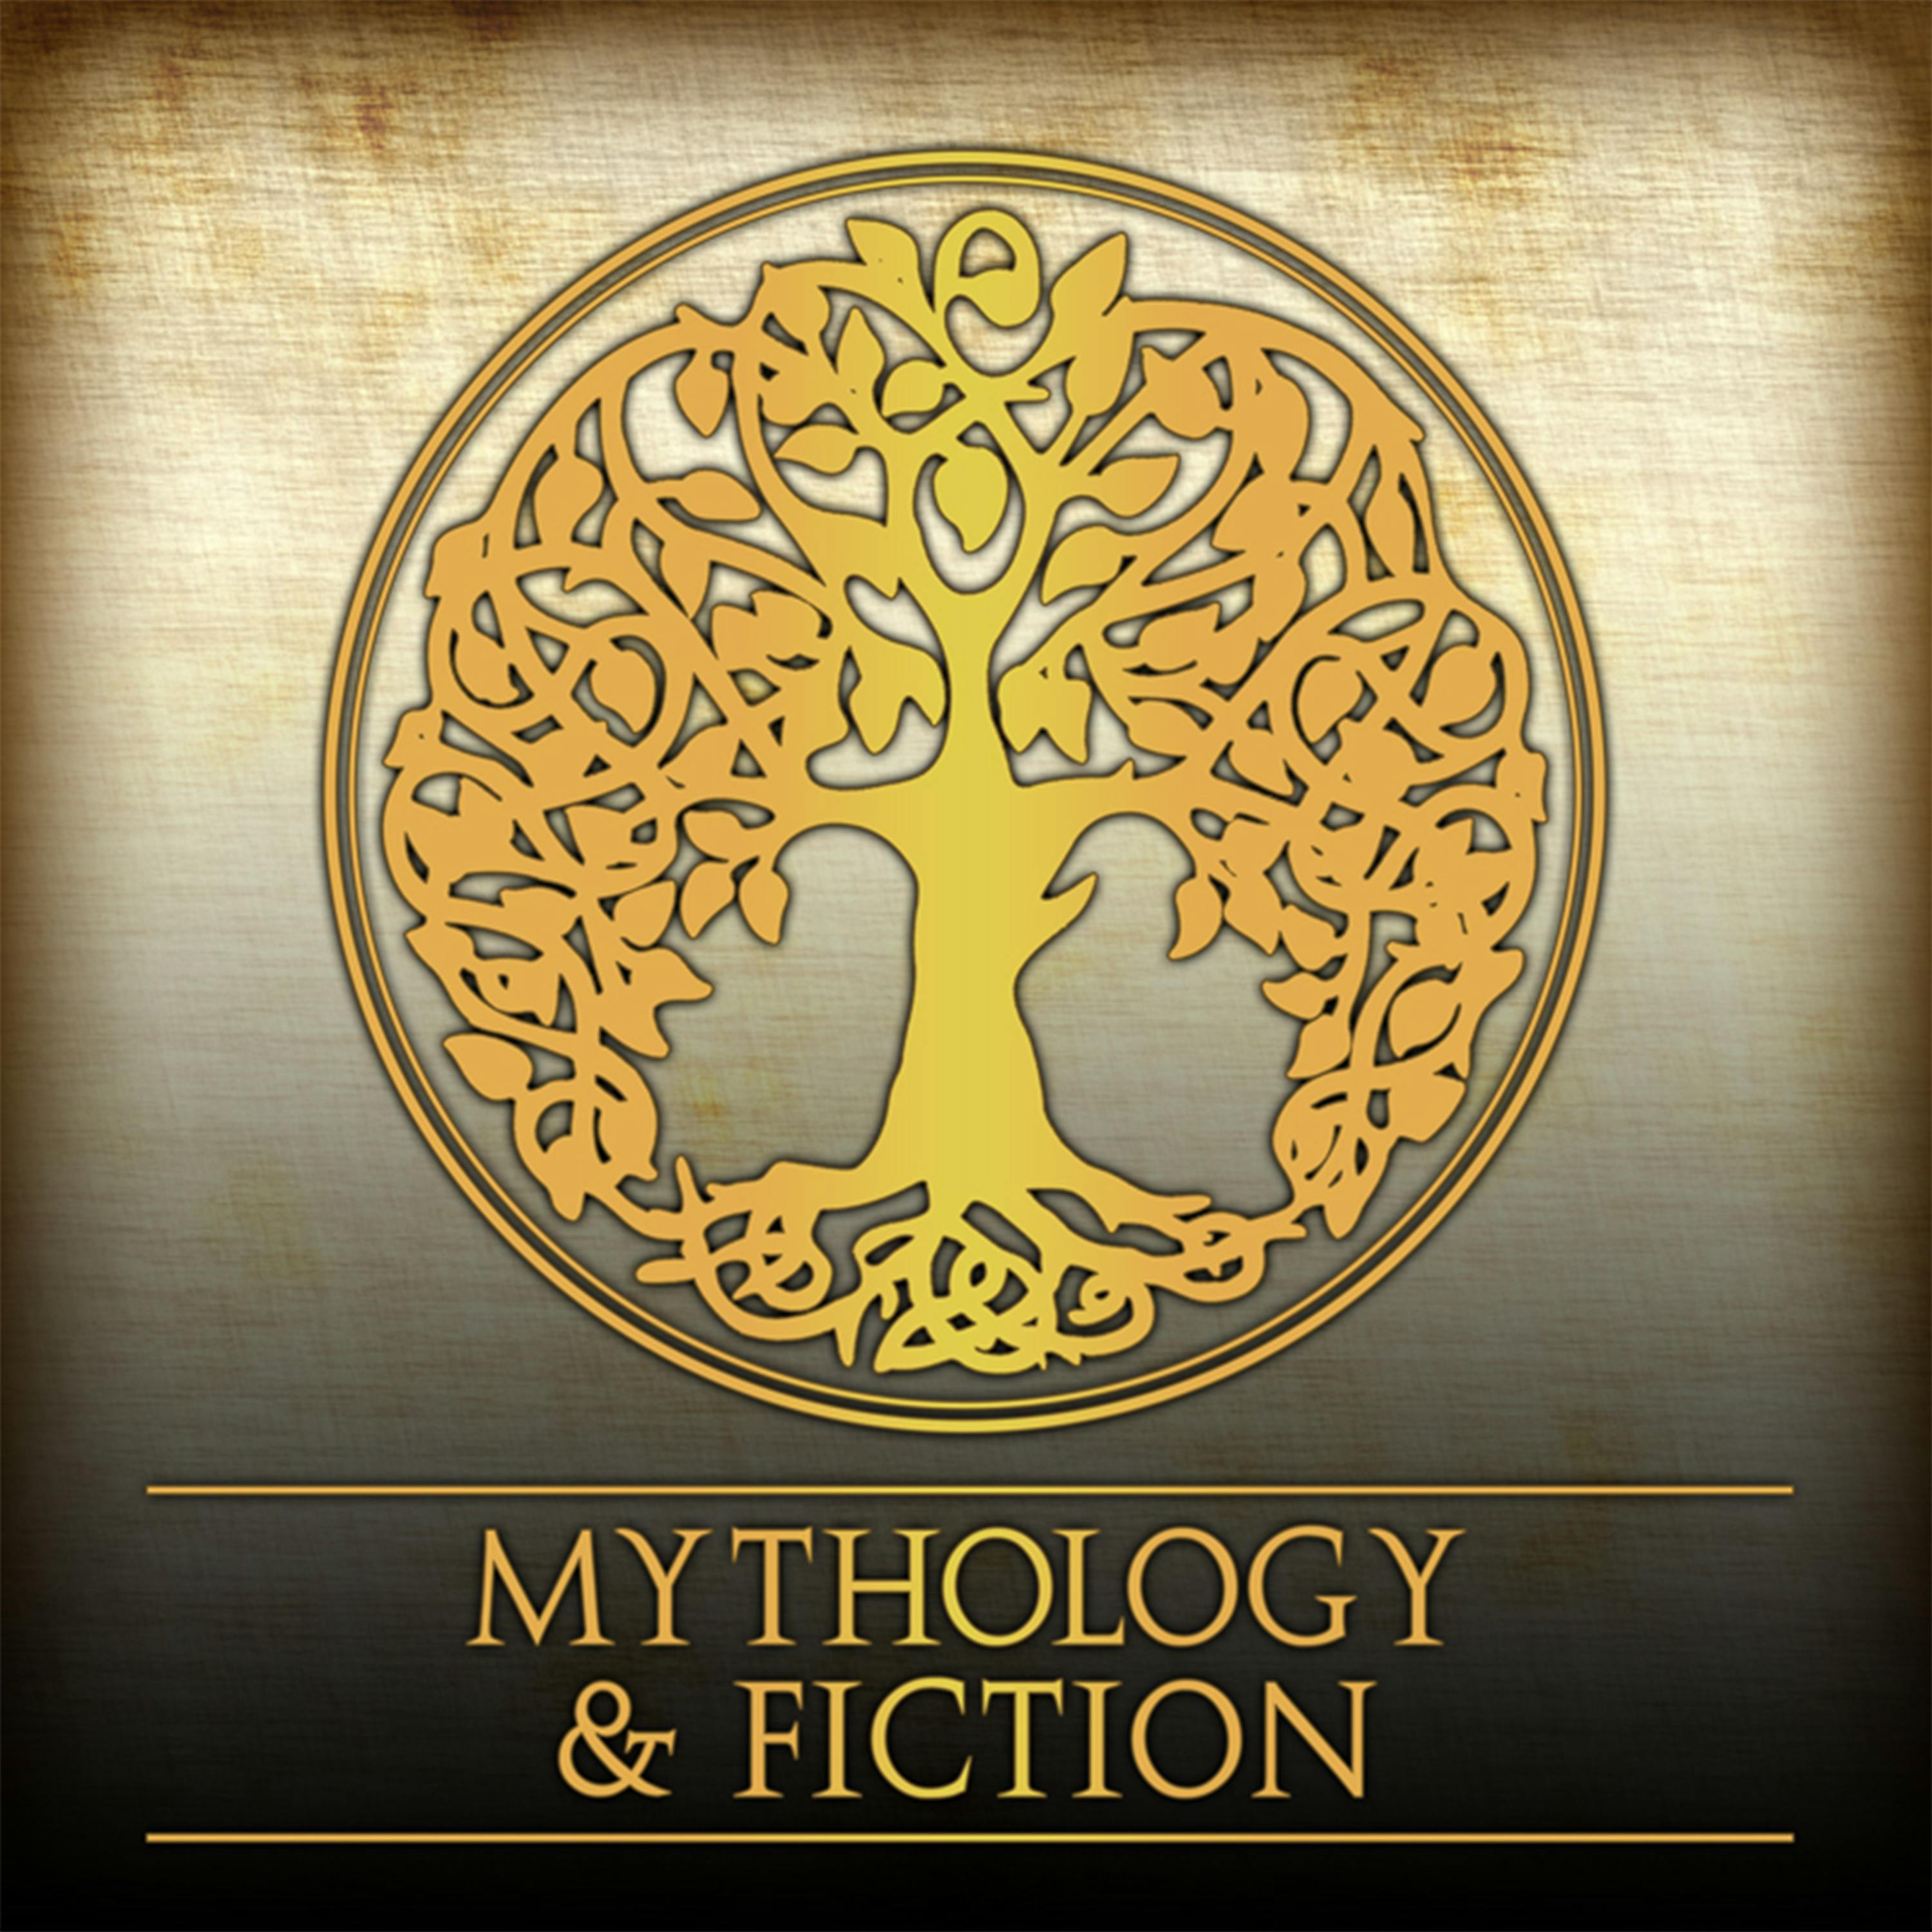 Mythology & Fiction Explained 